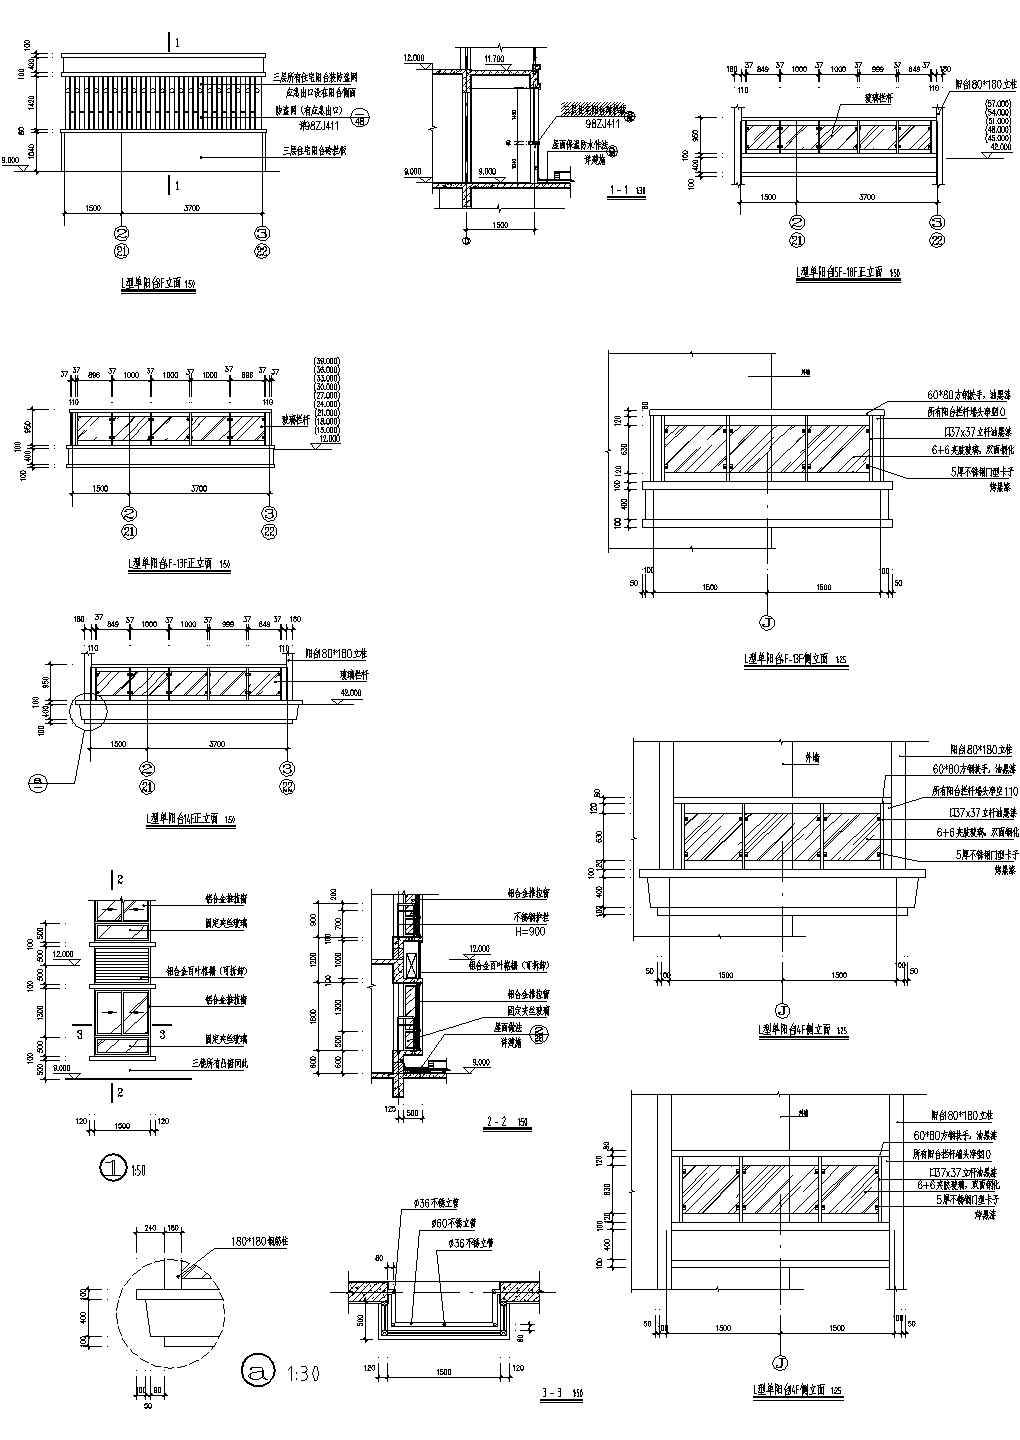 高层建筑施工图-L型阳台详图CAD施工图设计